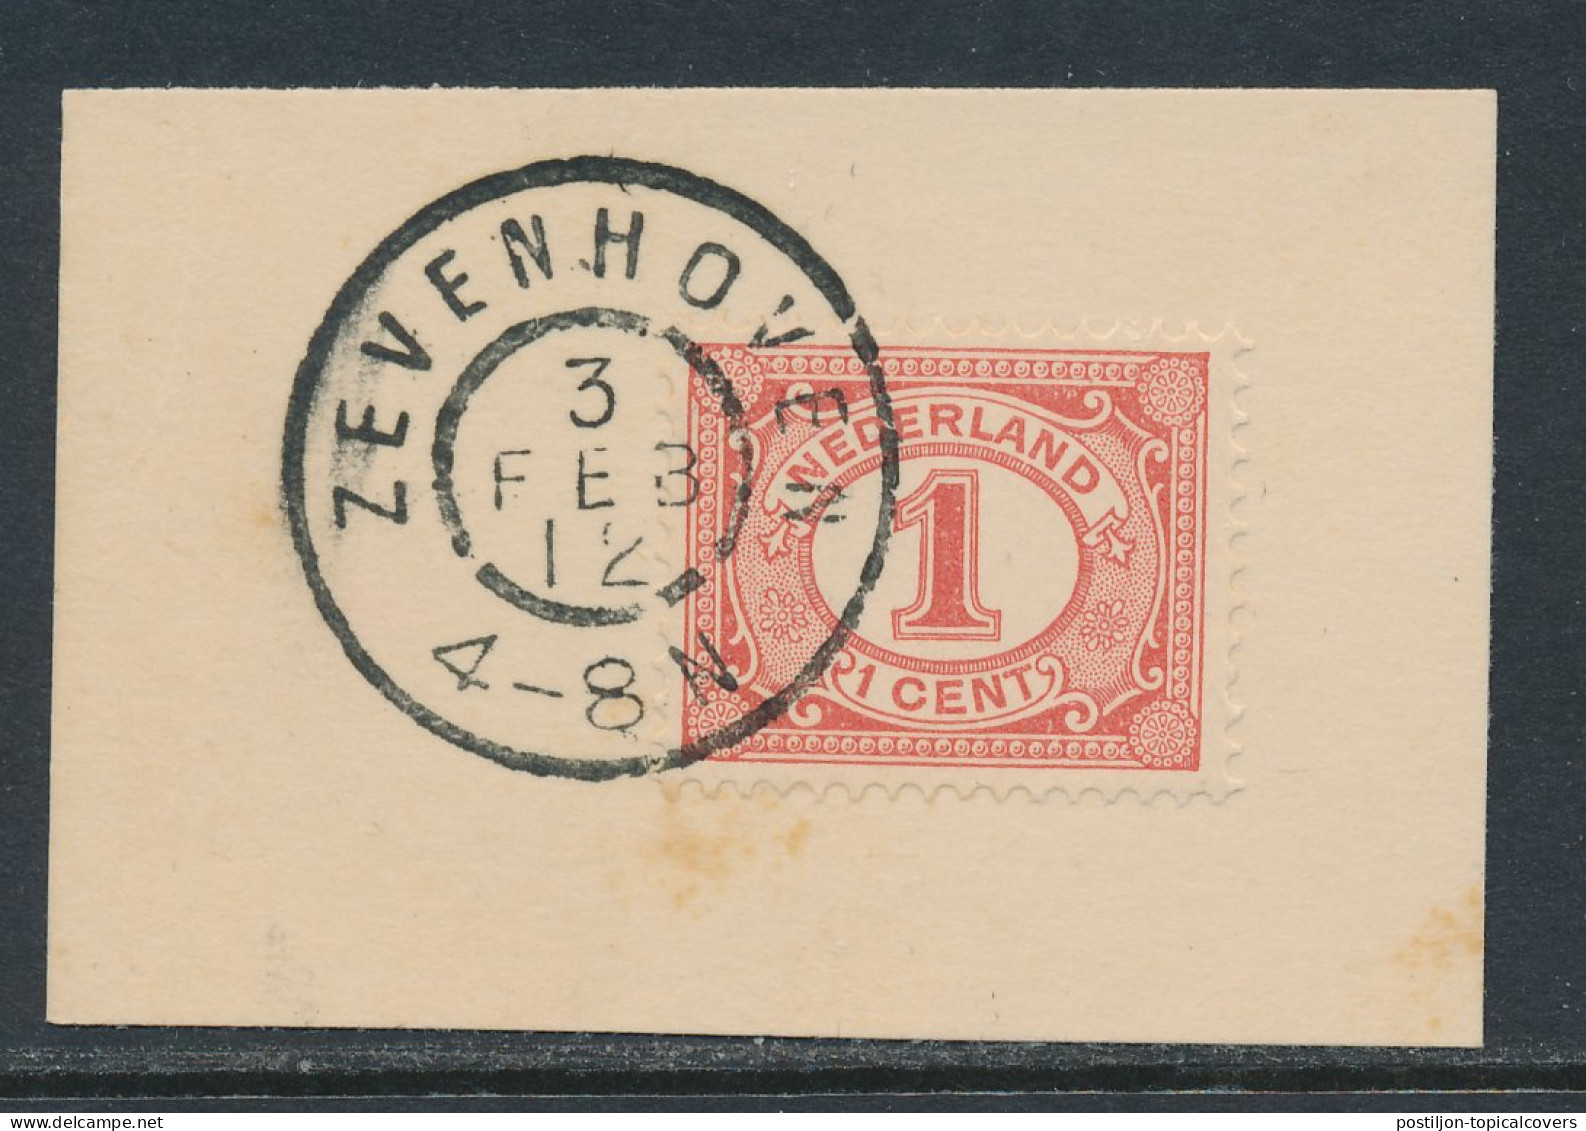 Grootrondstempel Zevenhoven 1912 - Storia Postale